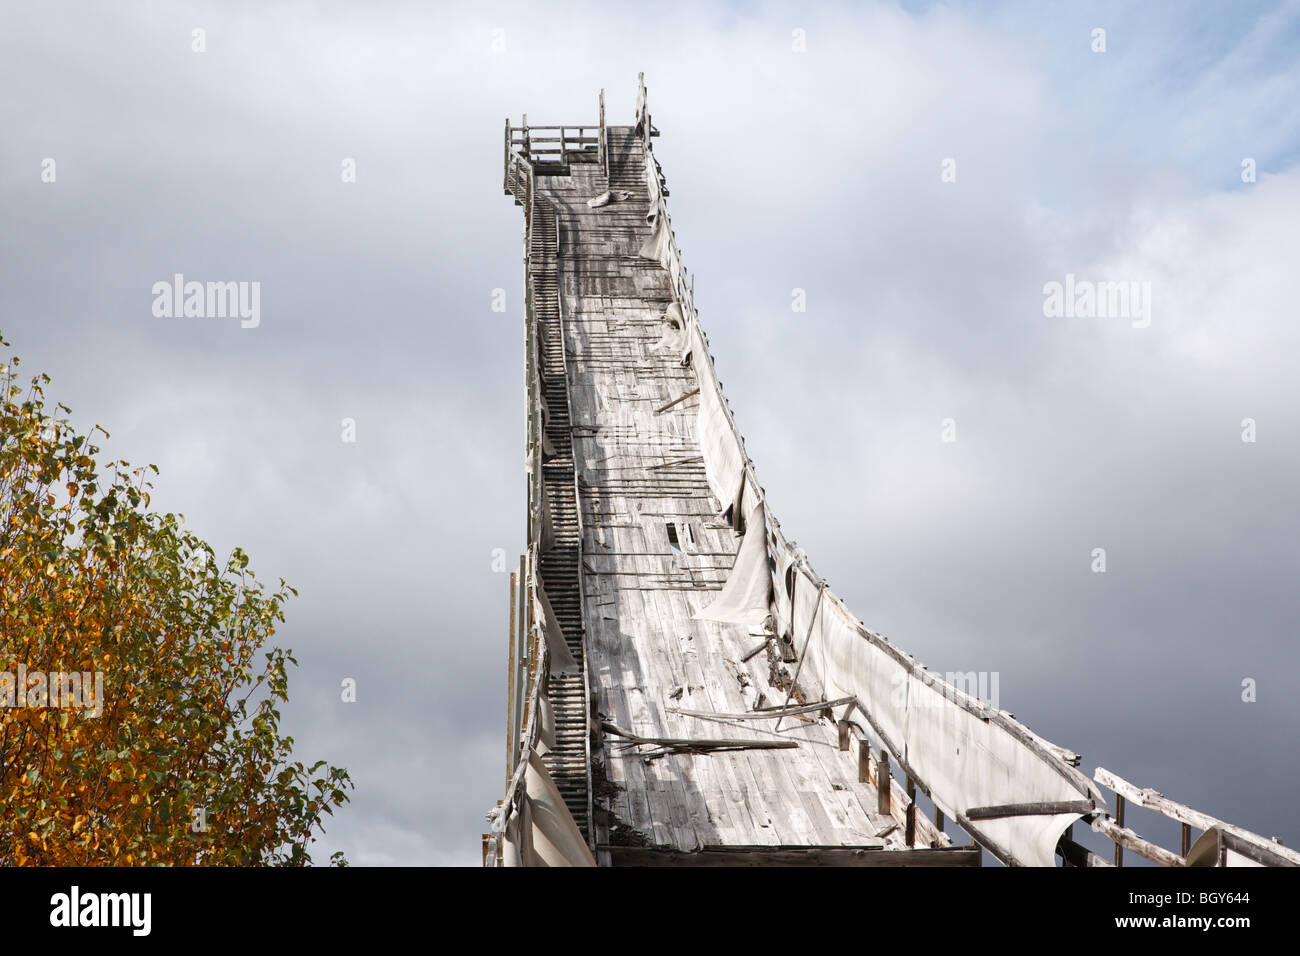 Escalier au saut à ski Nansen à Milan dans le New Hampshire aux États-Unis. Ce saut a été construit en 1936 et en 1938 Essais olympiques Banque D'Images